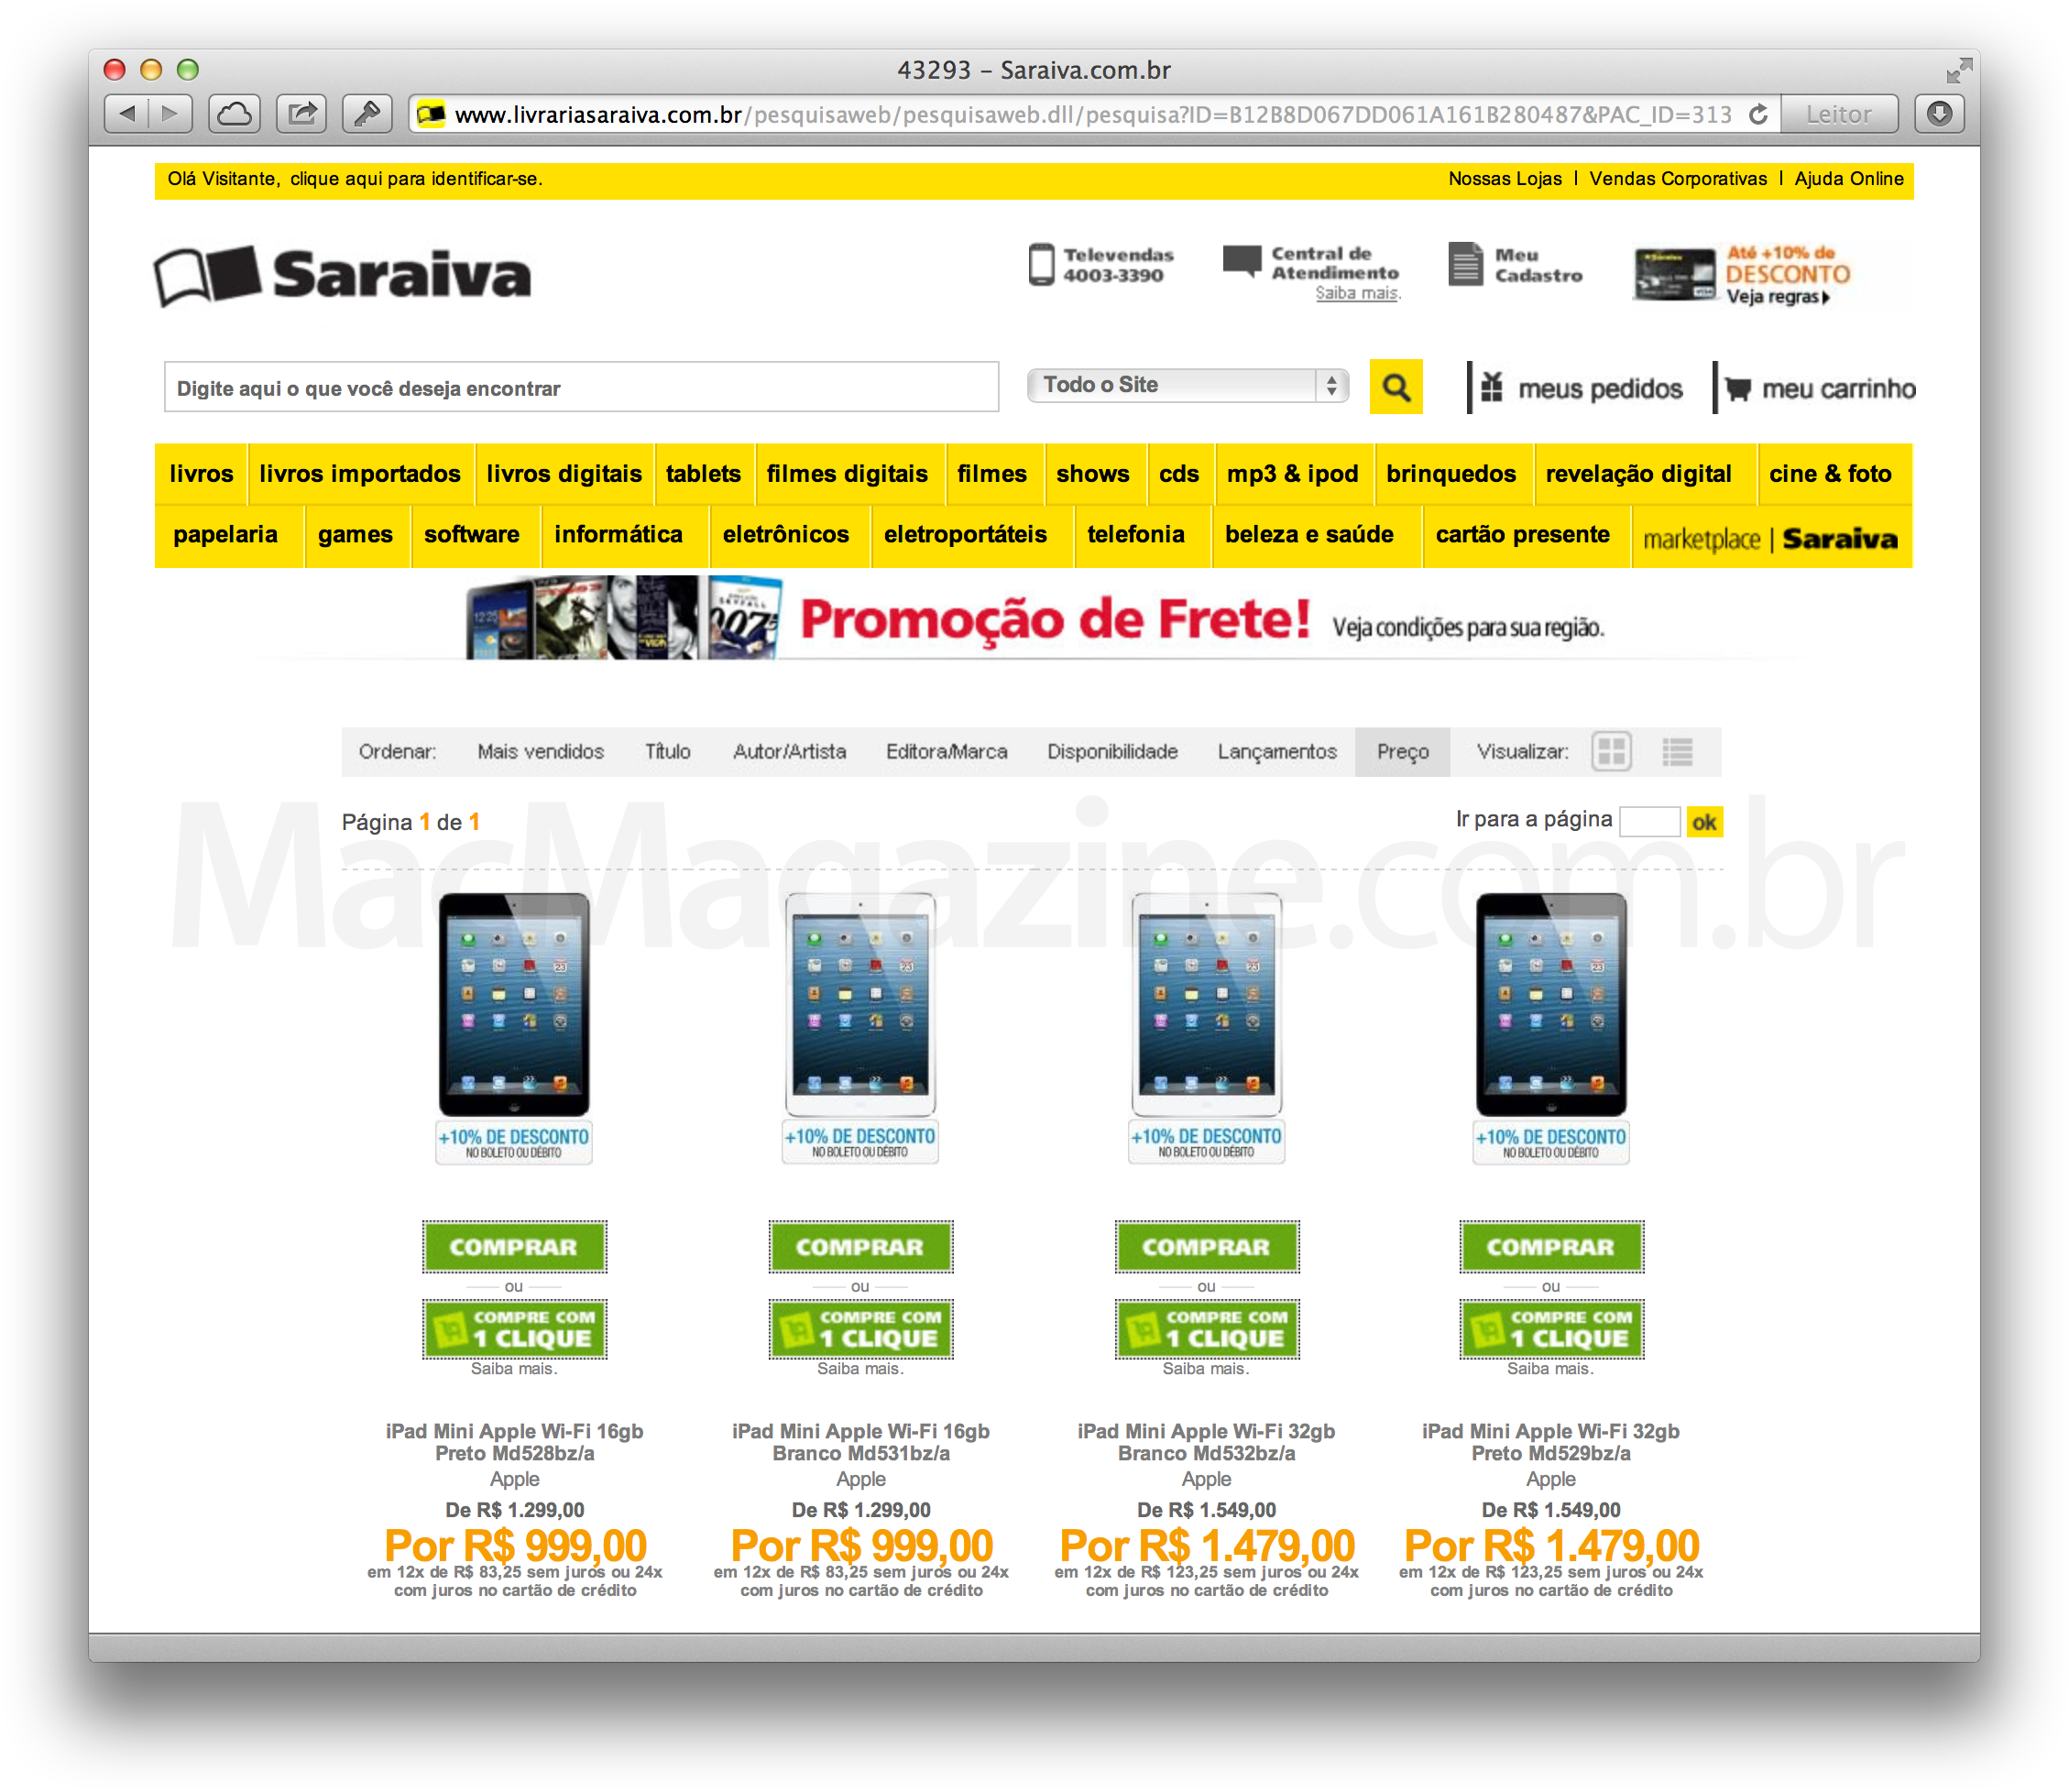 iPads mini em promoção na Saraiva